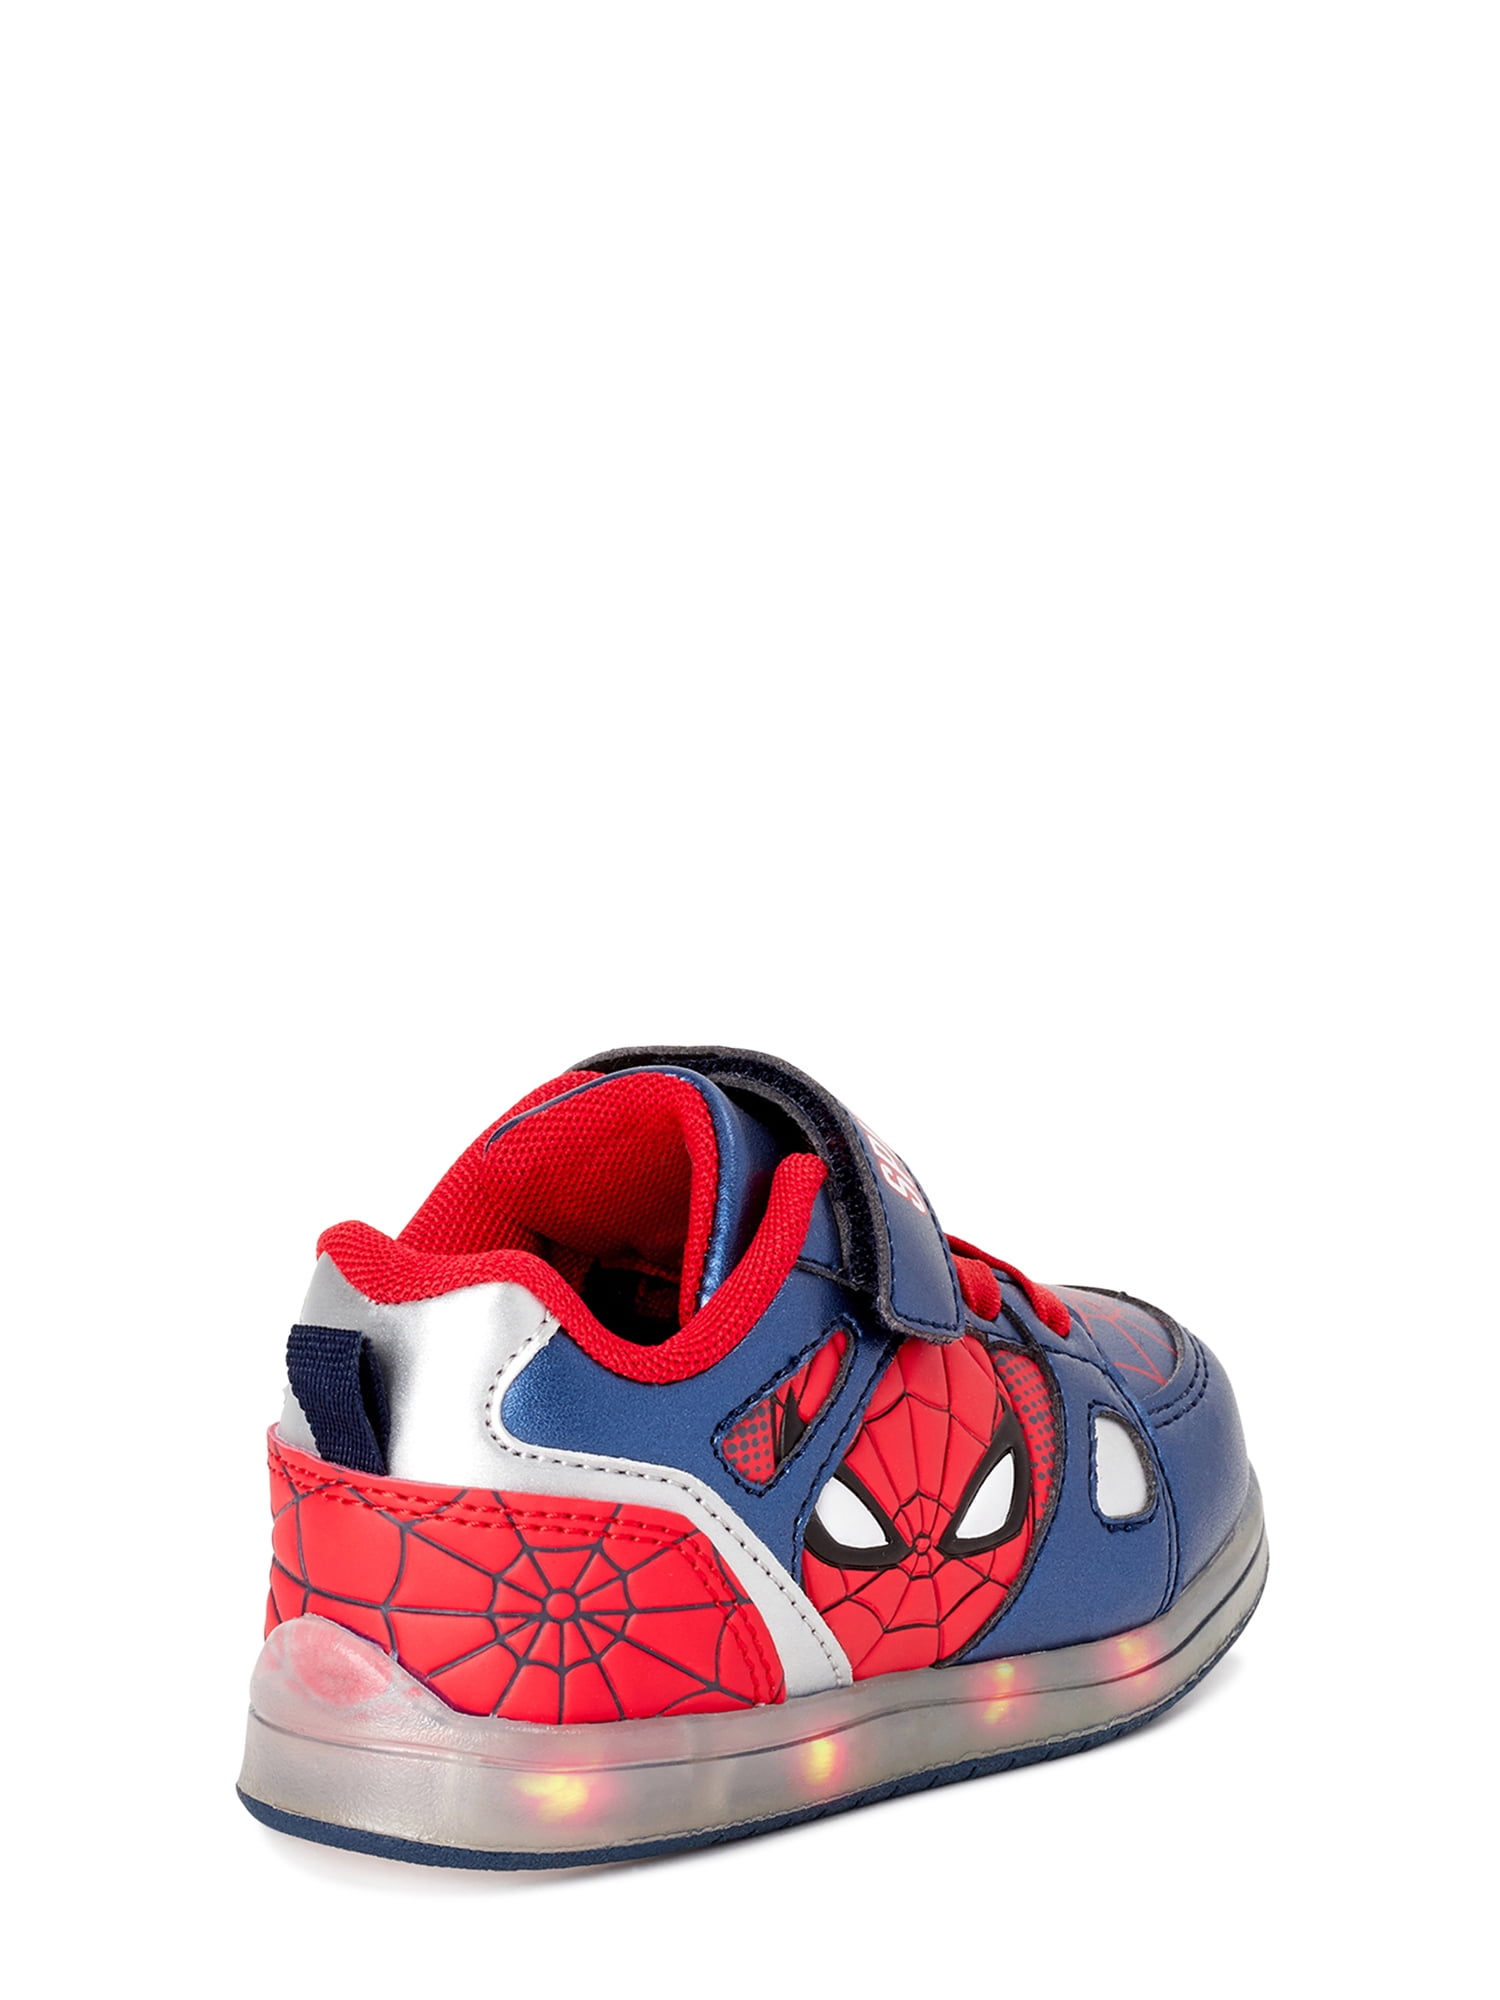 TISGOTAN Boy Shoes Spider Sneaker Breathable Ligthweight Hook and Loop Toddler,Little/Big Kid